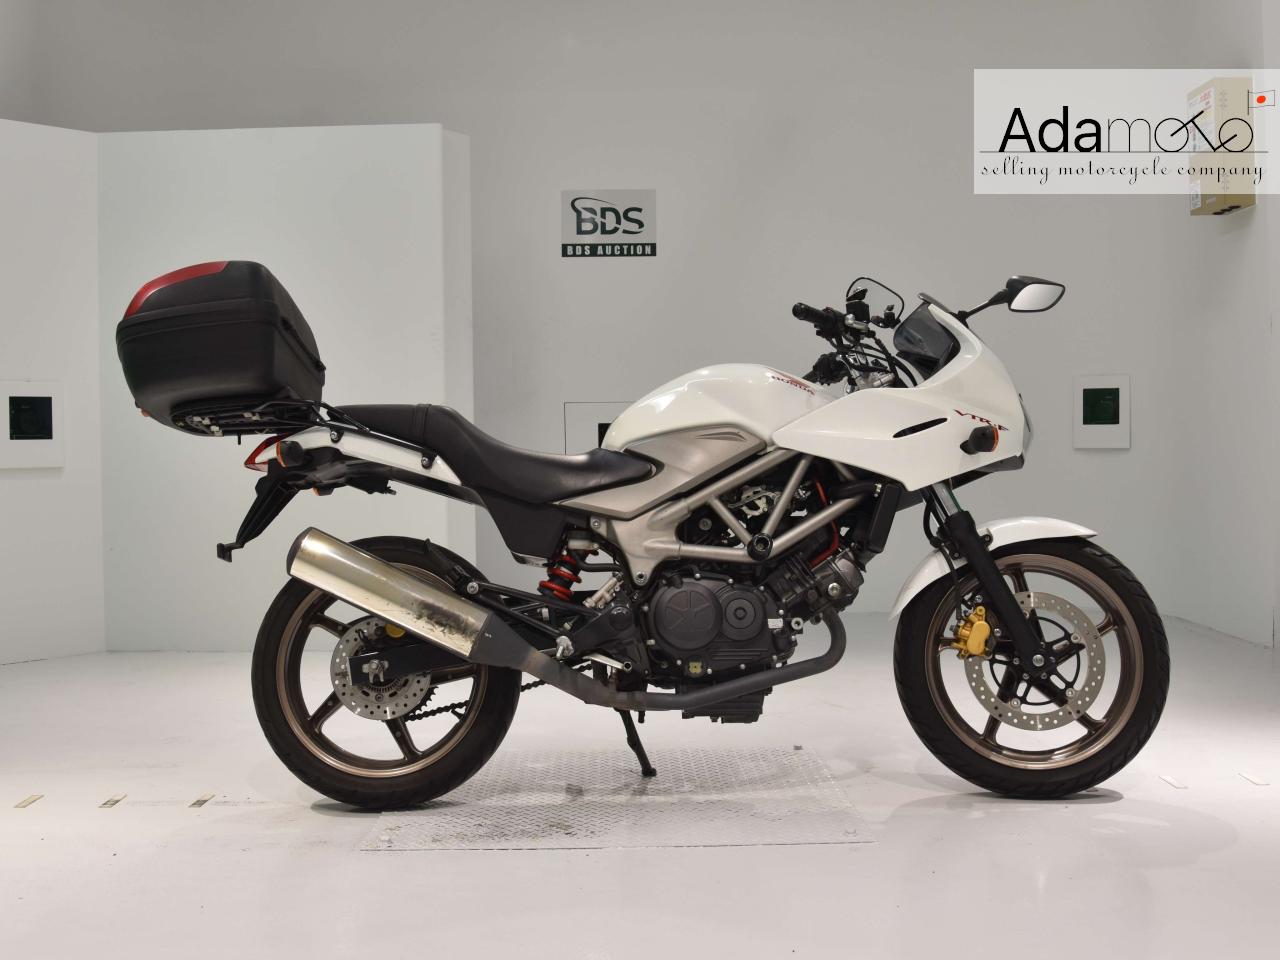 Honda VTR F250 - Adamoto - Motorcycles from Japan